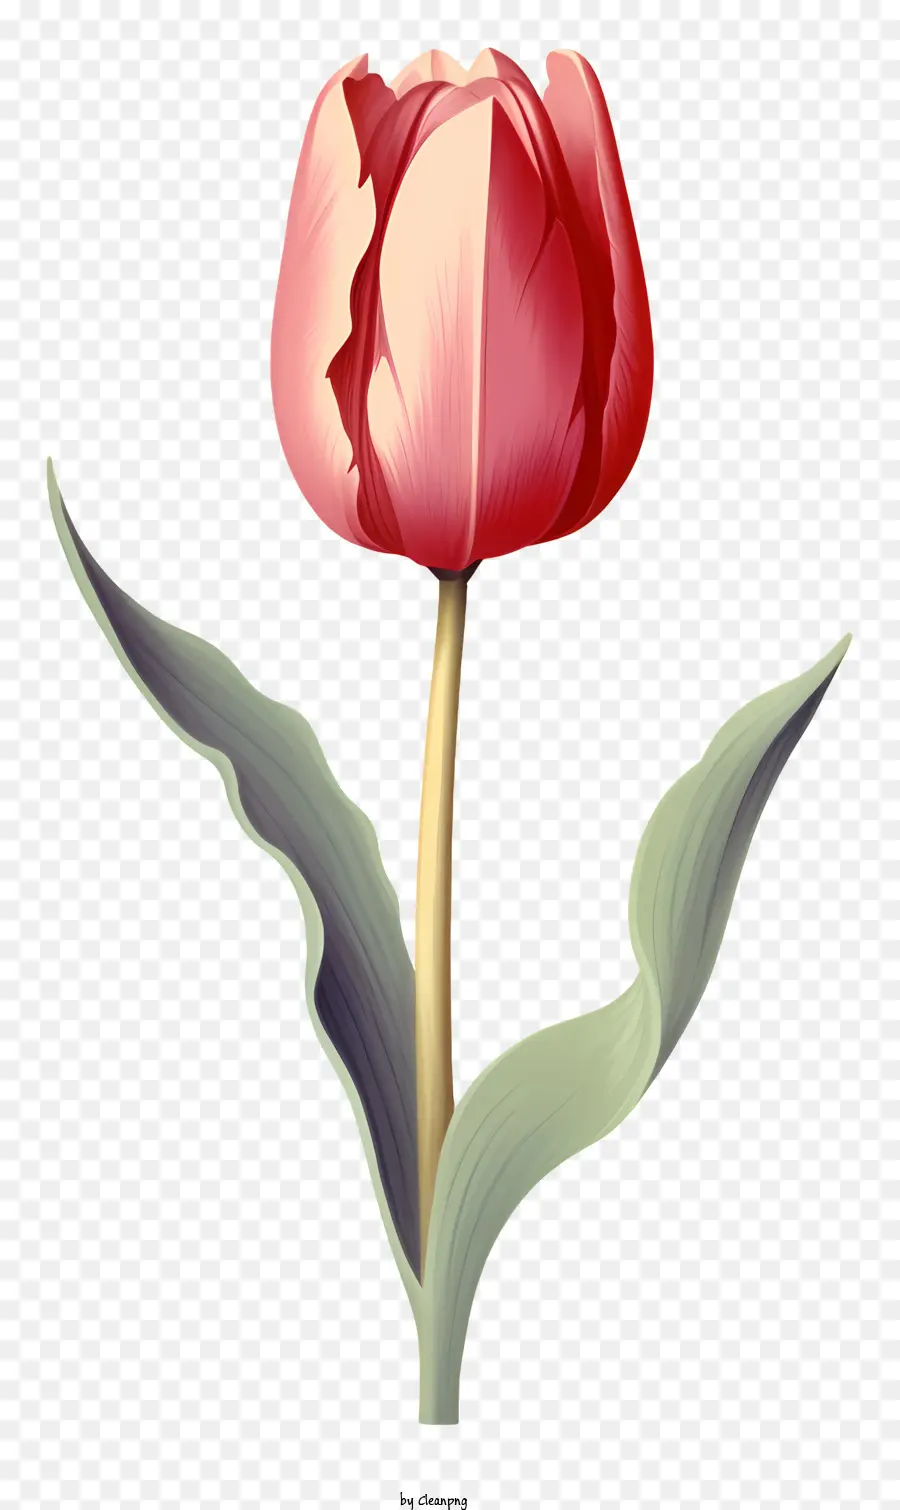 Red tulip xanh gốc lá xanh lá xanh lá cây nở hoa đầy đủ - Hoa tulip đỏ nở rộ trên nền đen